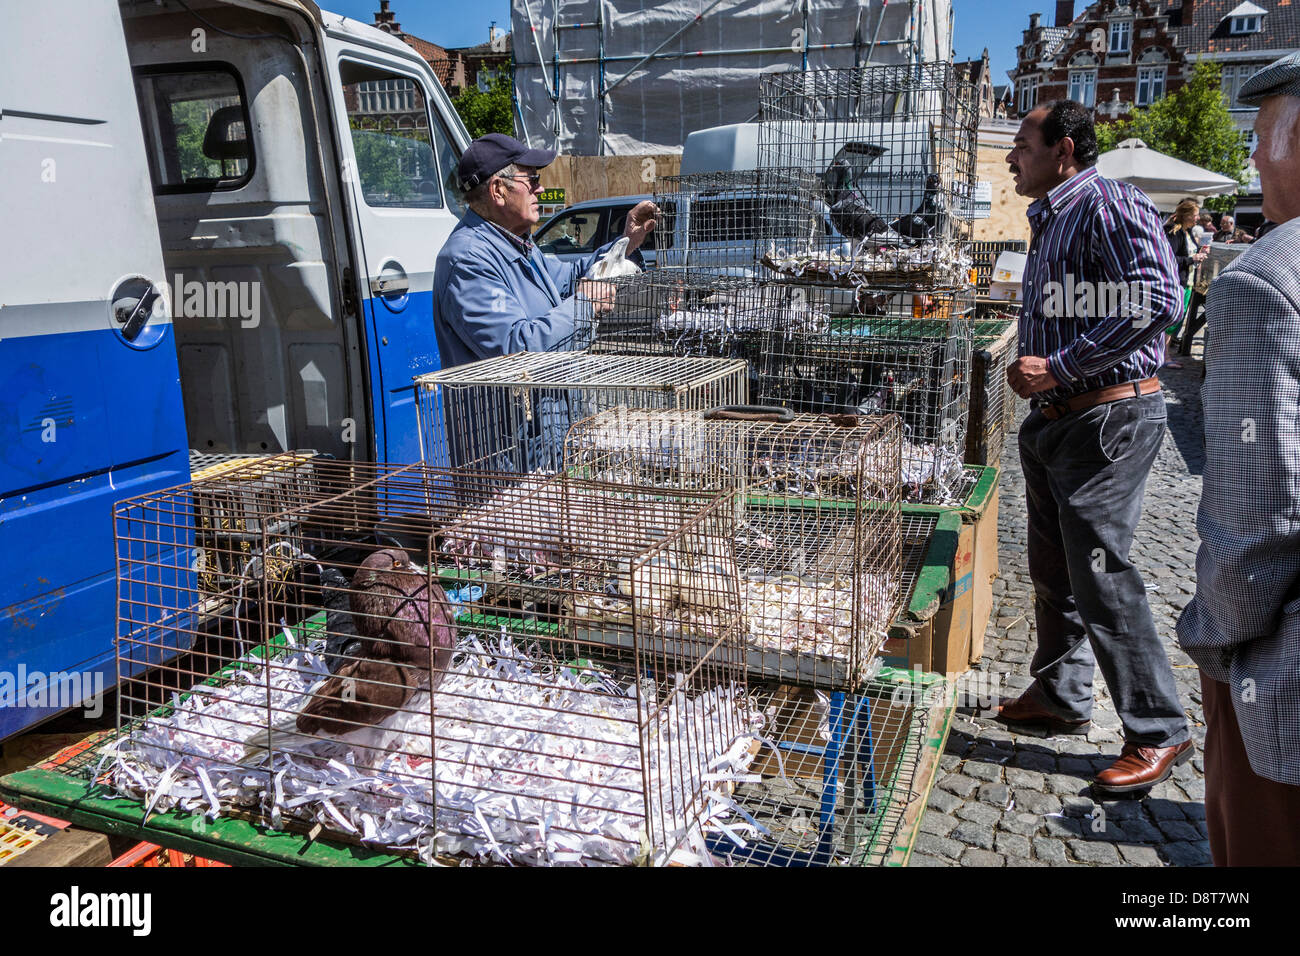 Standbesitzer Stand Geflügel Hühner in Käfigen an Einwanderer am Haustier Kosmetikmarkt in Europa zu verkaufen Stockfoto